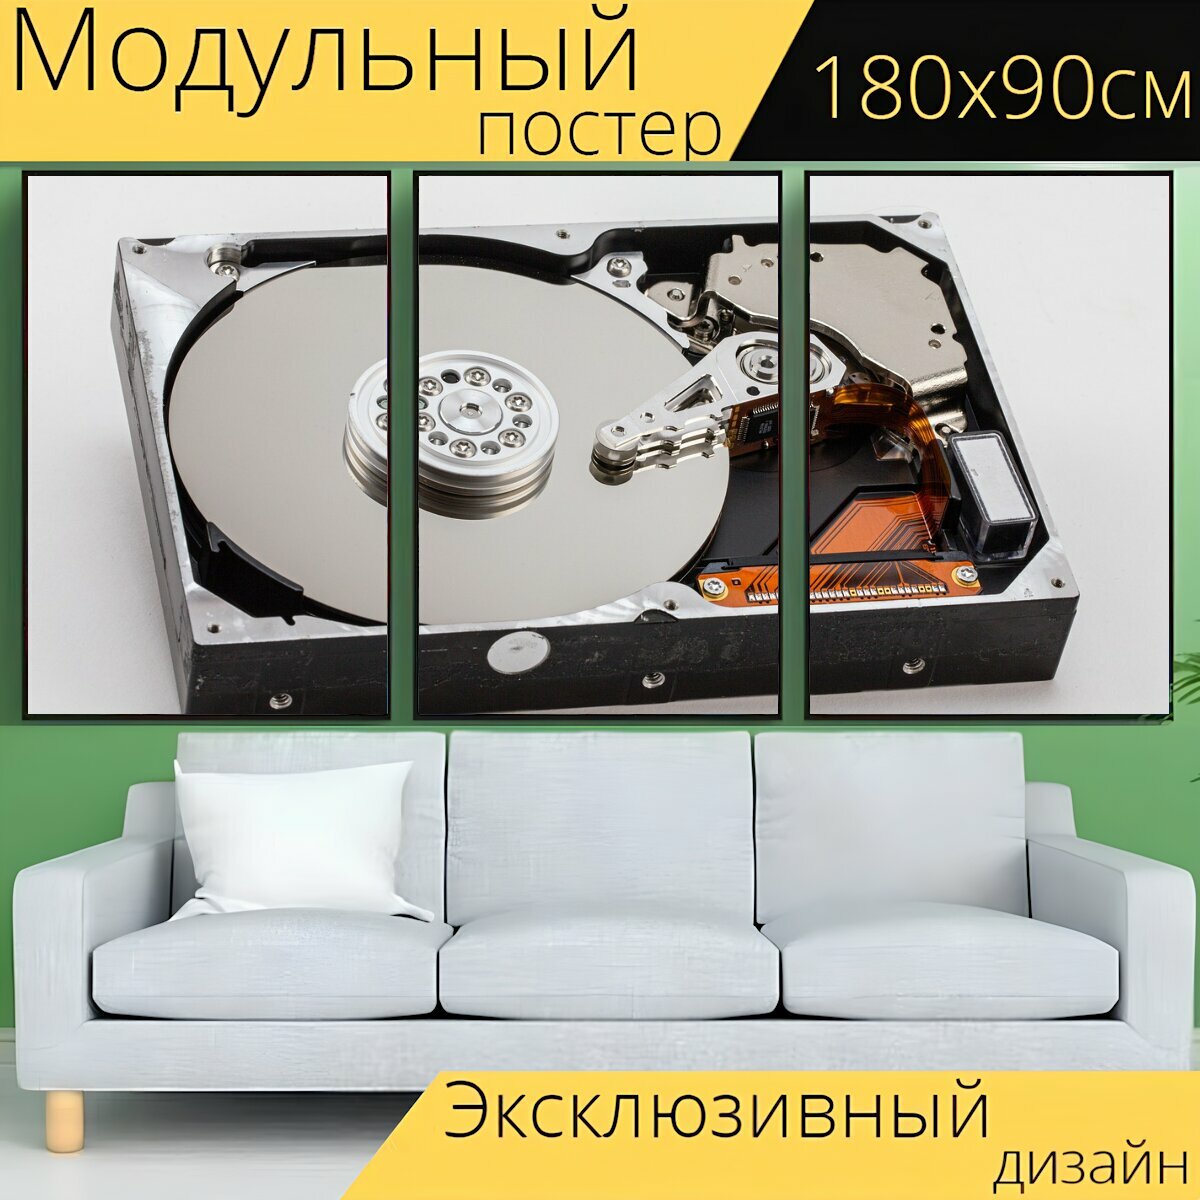 Модульный постер "Жесткий диск внутри, жесткий диск, магнитное хранилище" 180 x 90 см. для интерьера